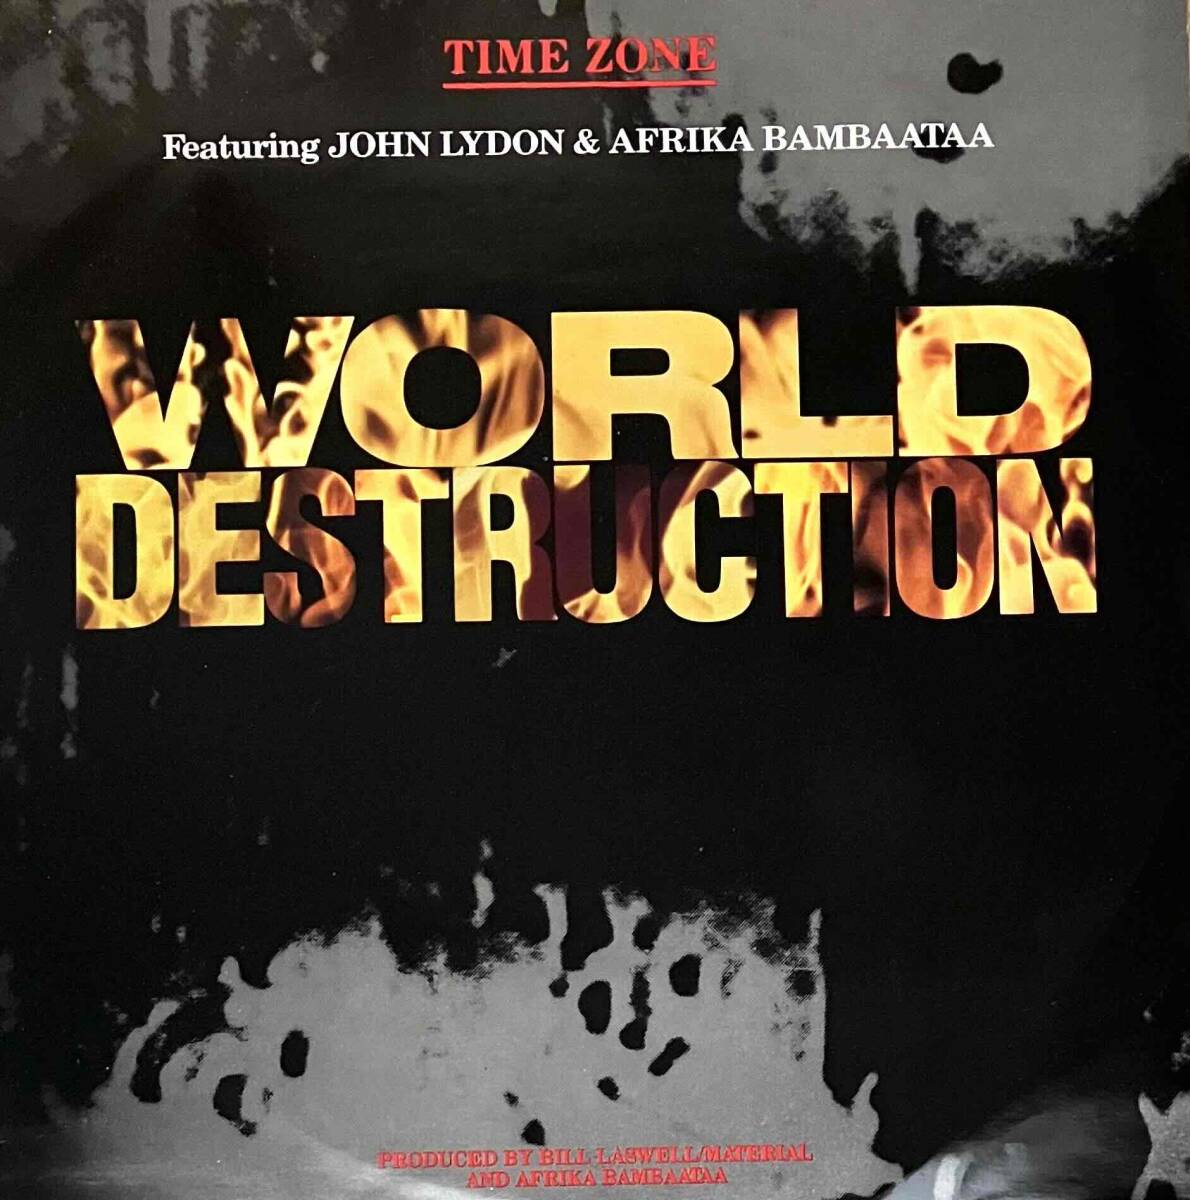 Time Zone Featuring John Lydon & Afrika Bambaataa / World Destruction【12''】1984 / UK / Virgin / VS 743-12_画像1